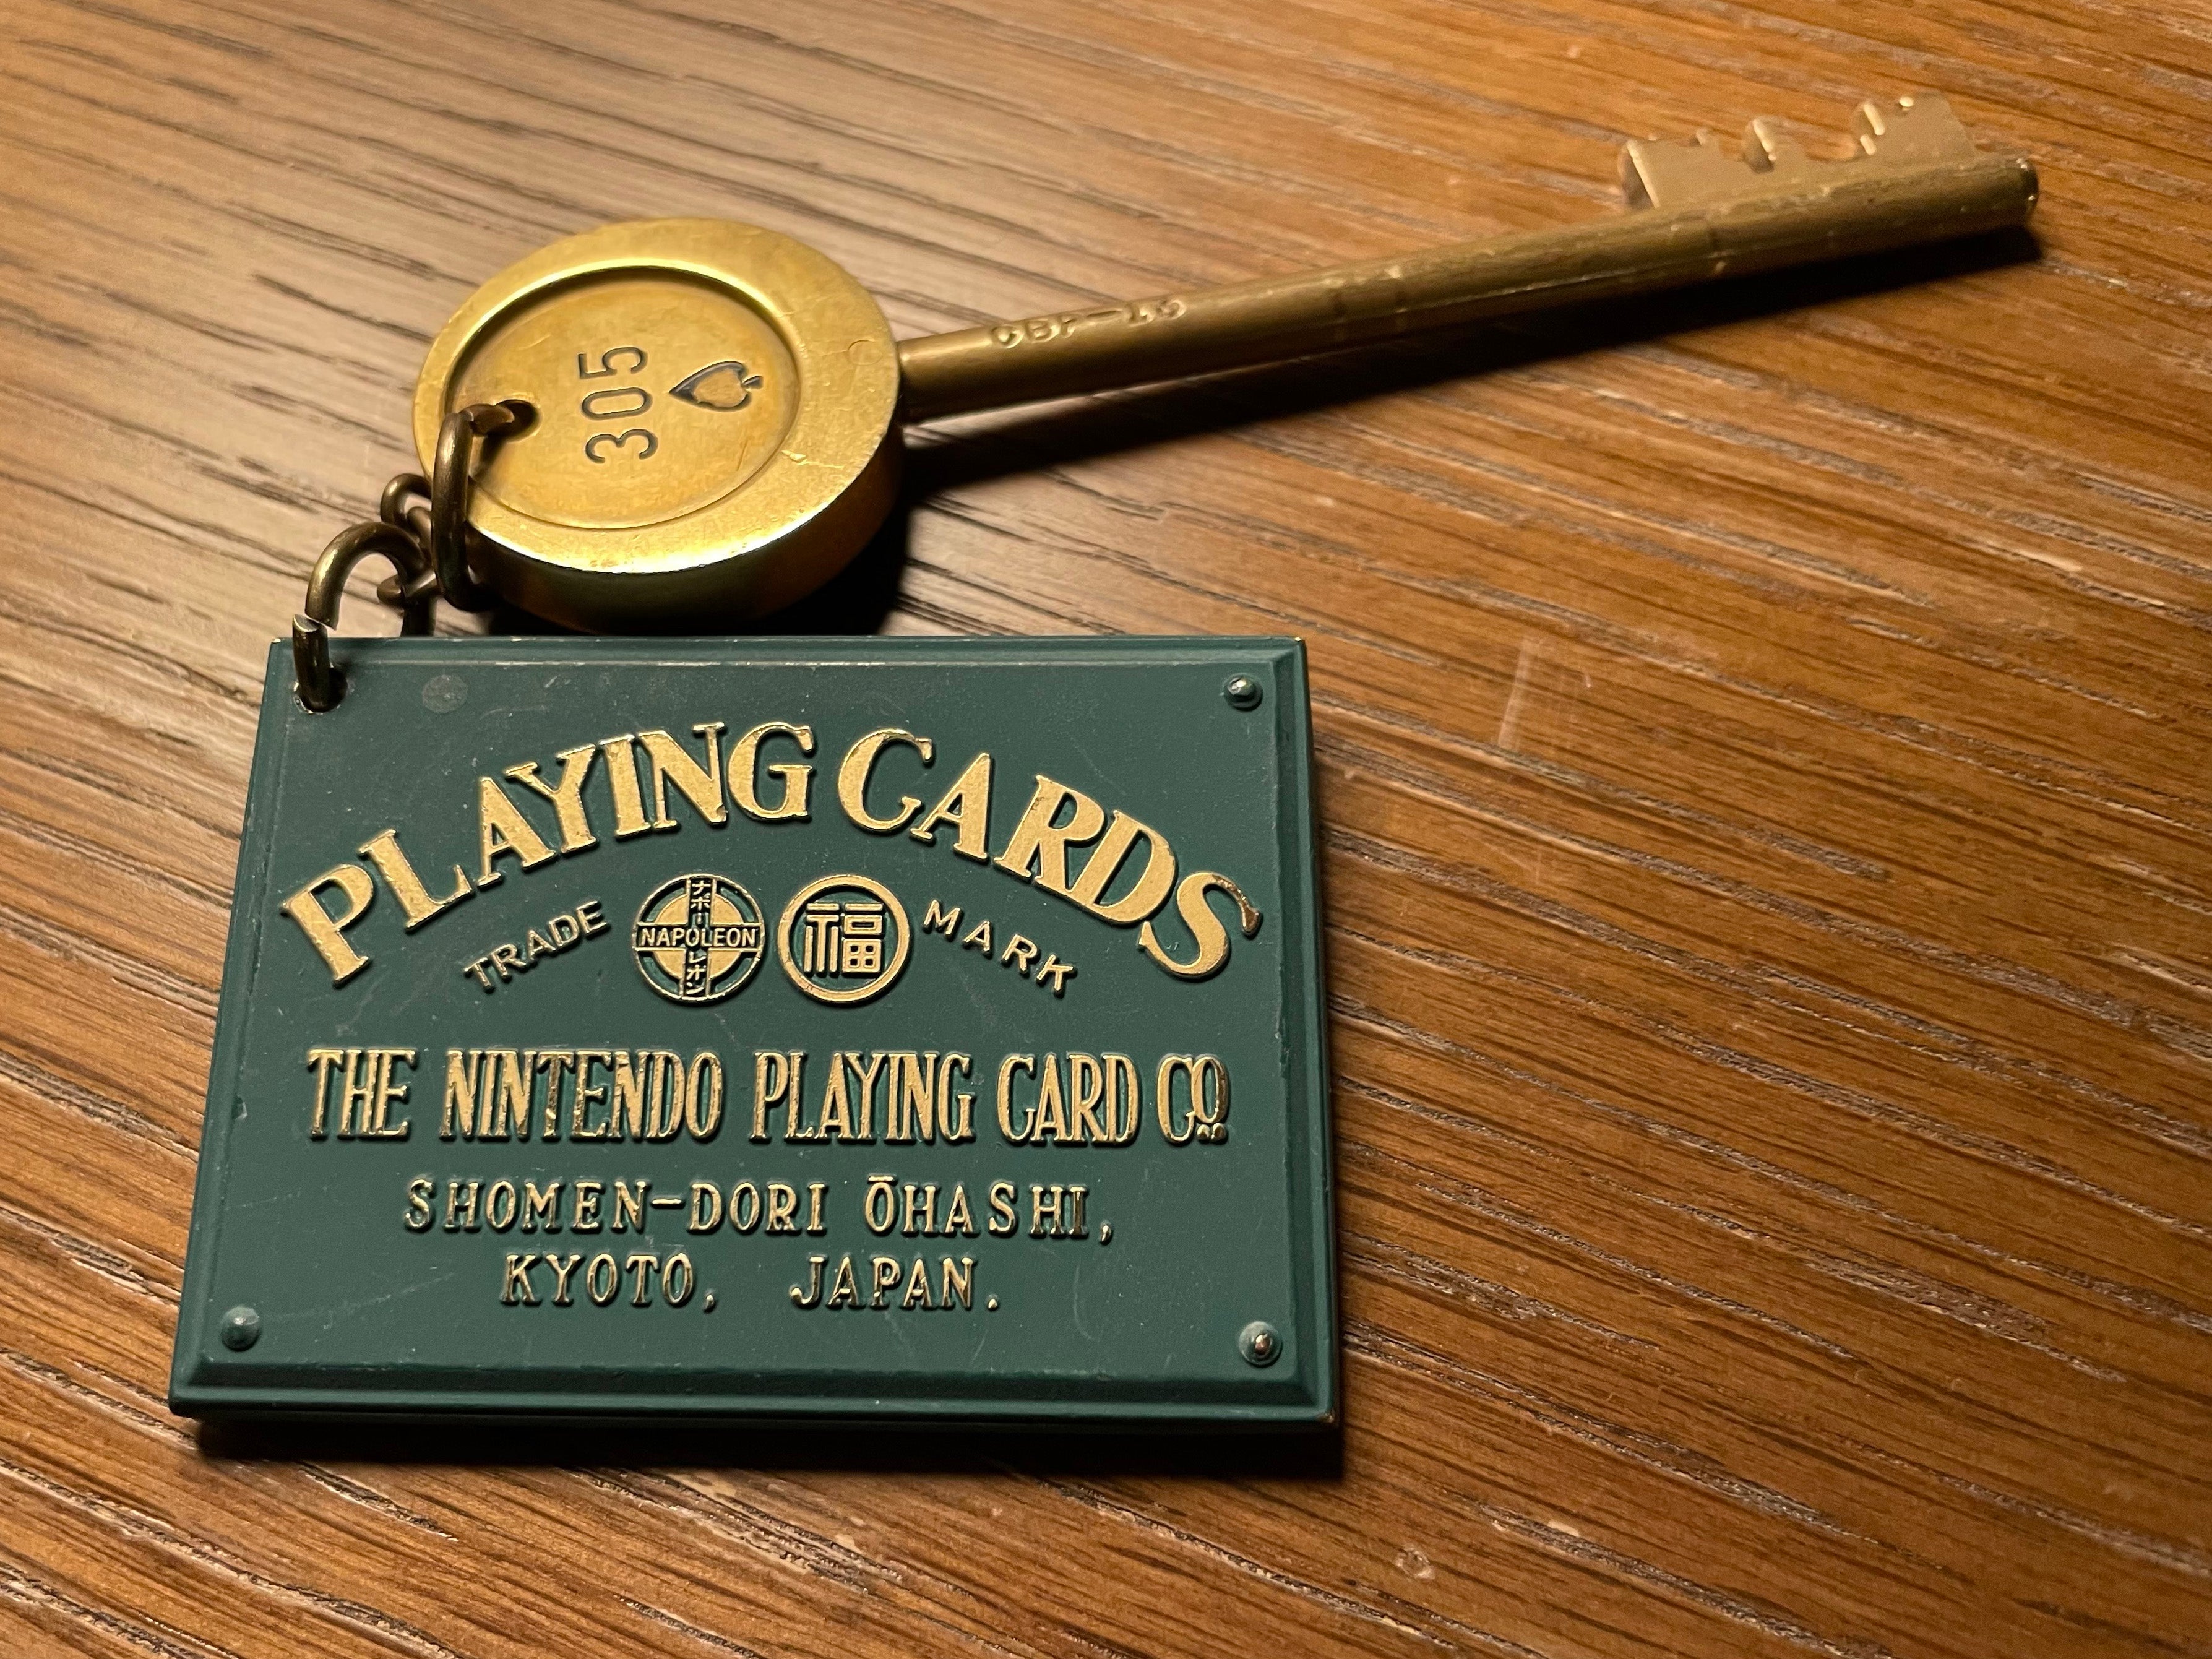 Une clé Mortis avec un numéro, attachée sur un porte-clés à une plaque métallique rectangulaire verte de la taille d'une carte qui se lit 